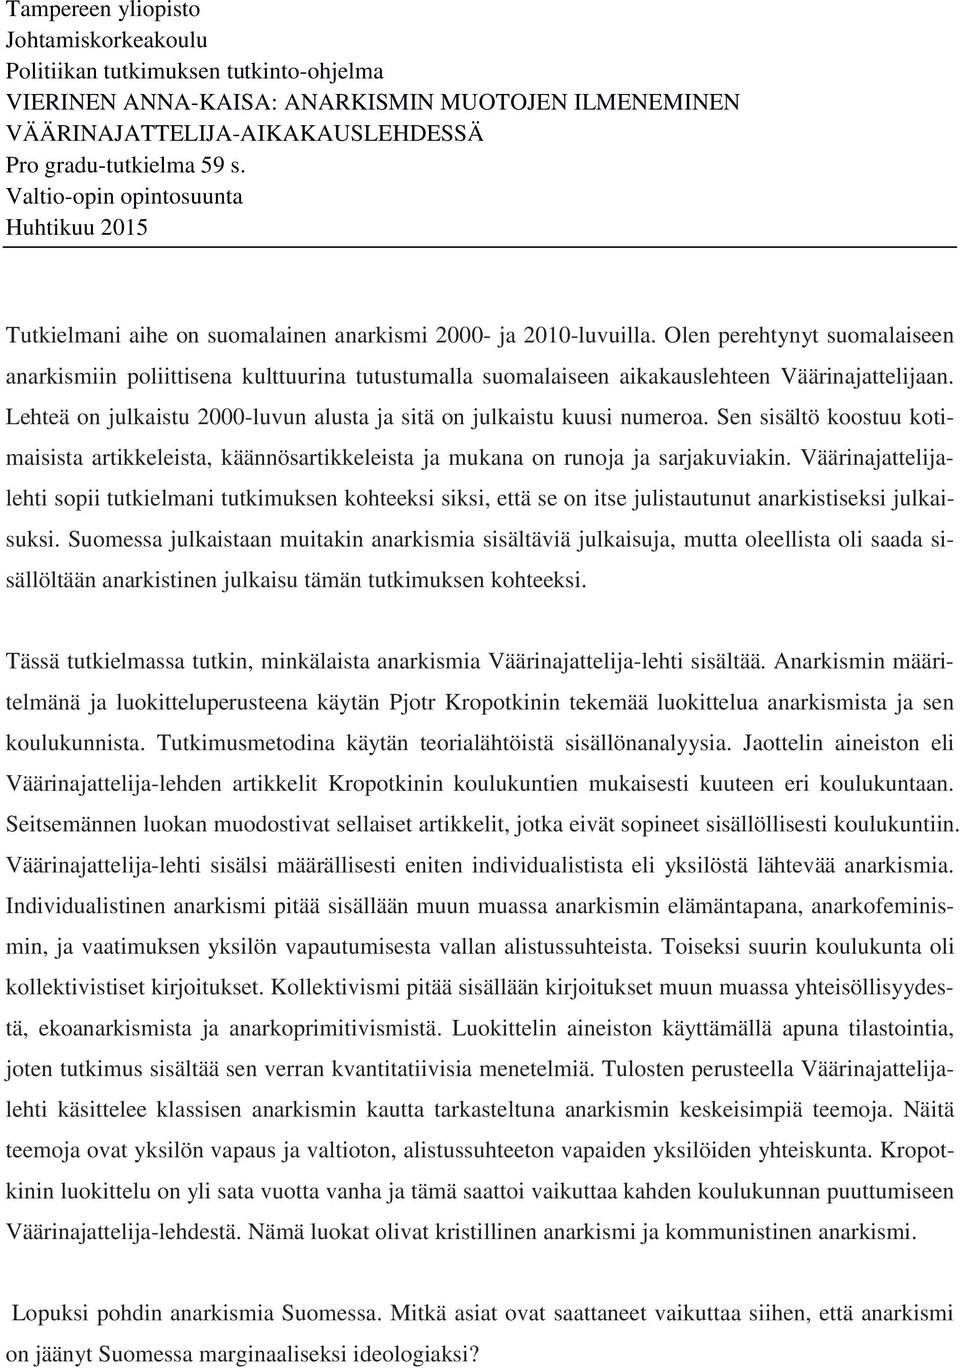 Olen perehtynyt suomalaiseen anarkismiin poliittisena kulttuurina tutustumalla suomalaiseen aikakauslehteen Väärinajattelijaan.